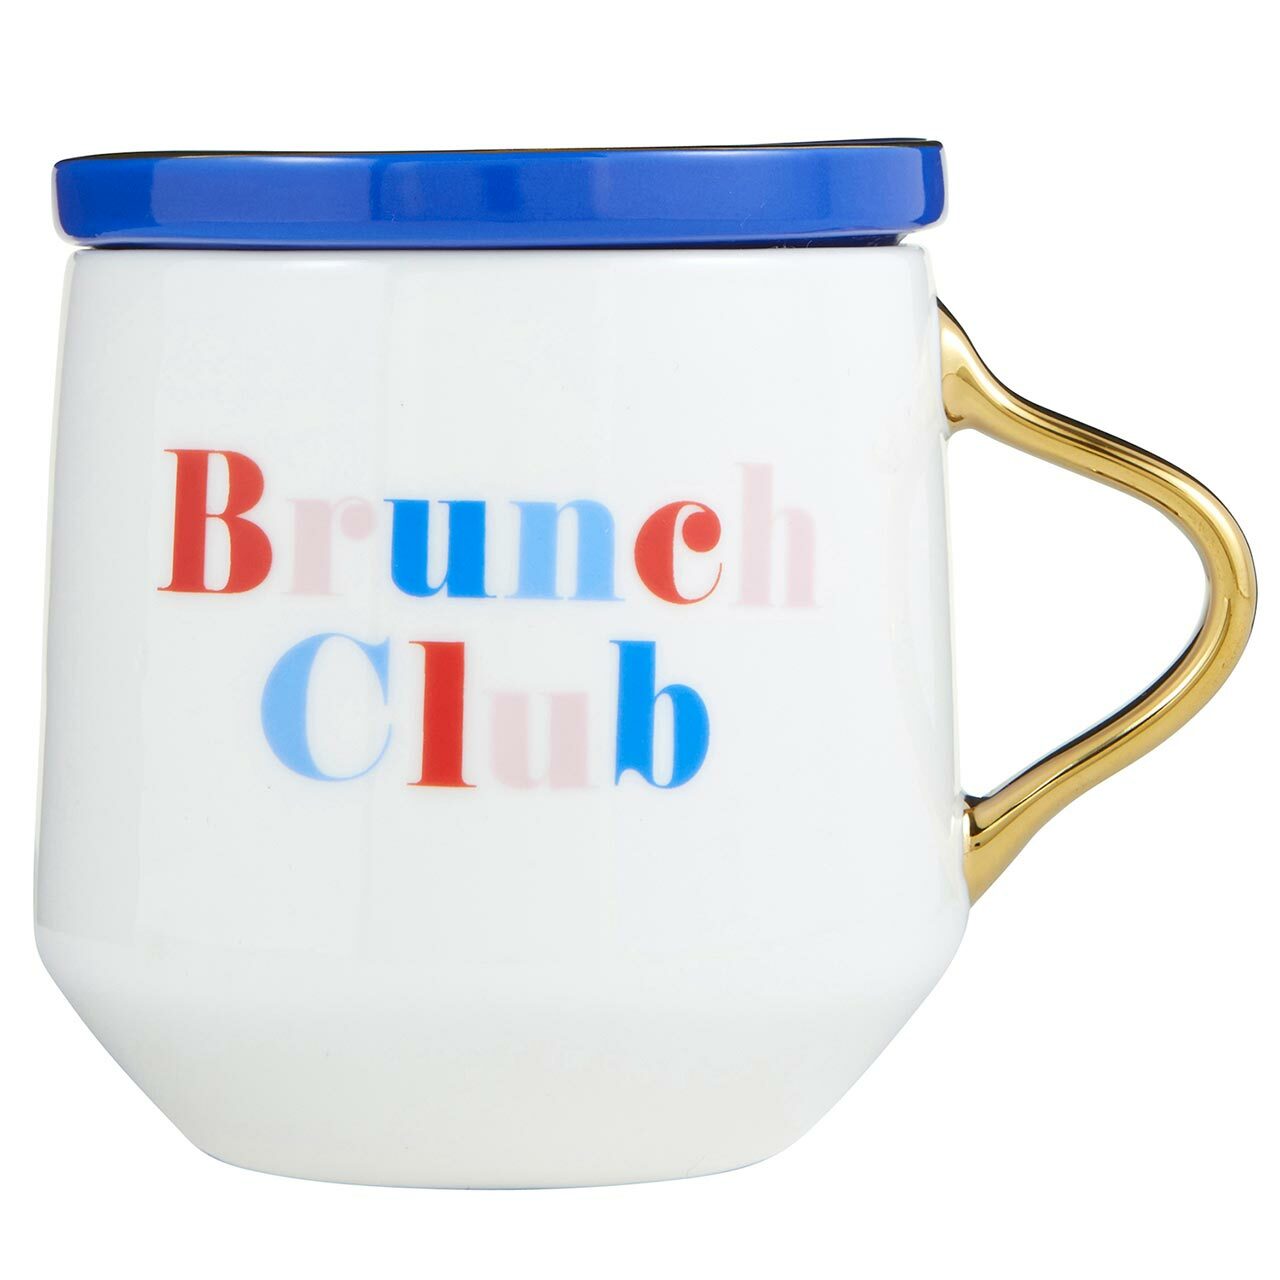 Brunch Club Mug & Coaster Lid in Blue